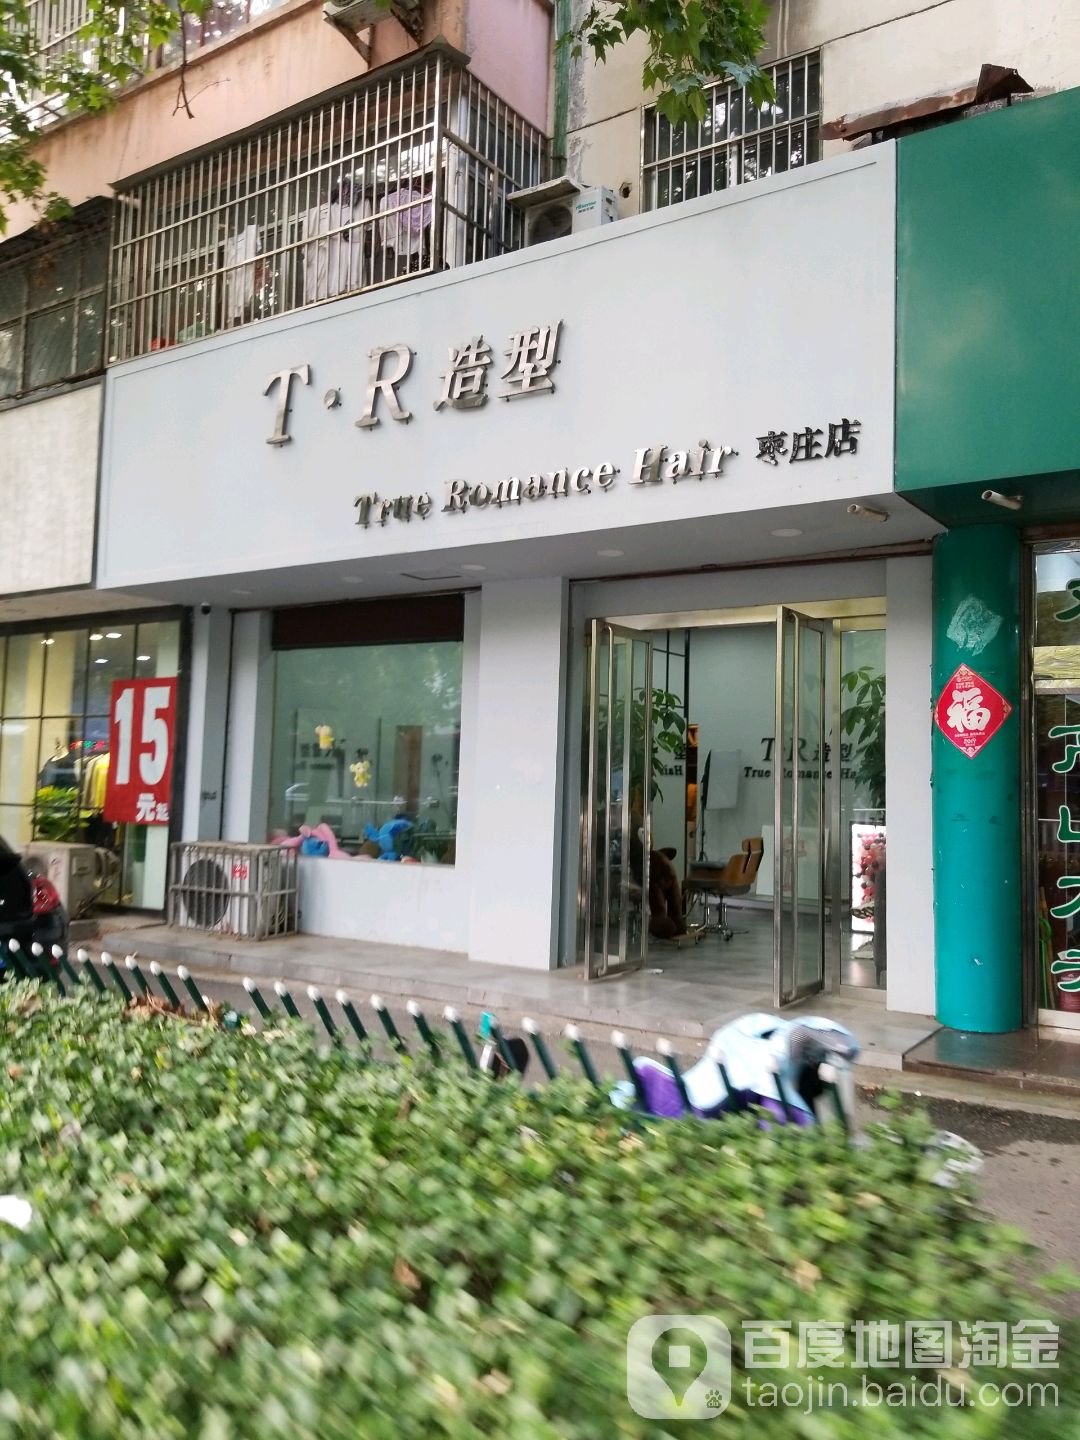 TR号造型(枣庄店)